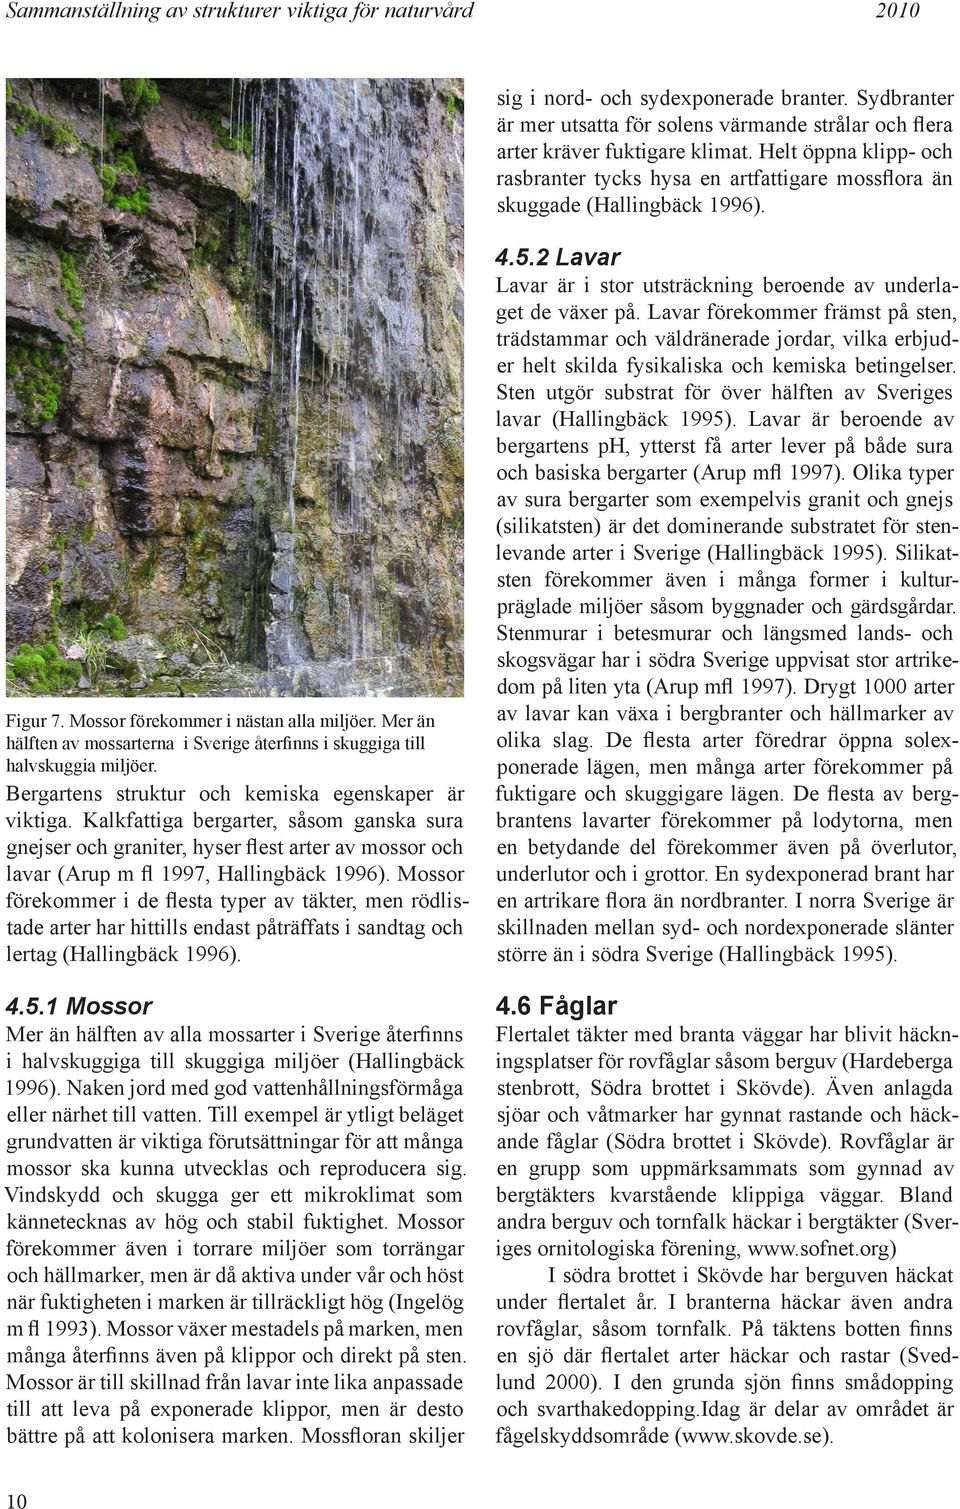 Kalkfattiga bergarter, såsom ganska sura gnejser och graniter, hyser flest arter av mossor och lavar (Arup m fl 1997, Hallingbäck 1996).